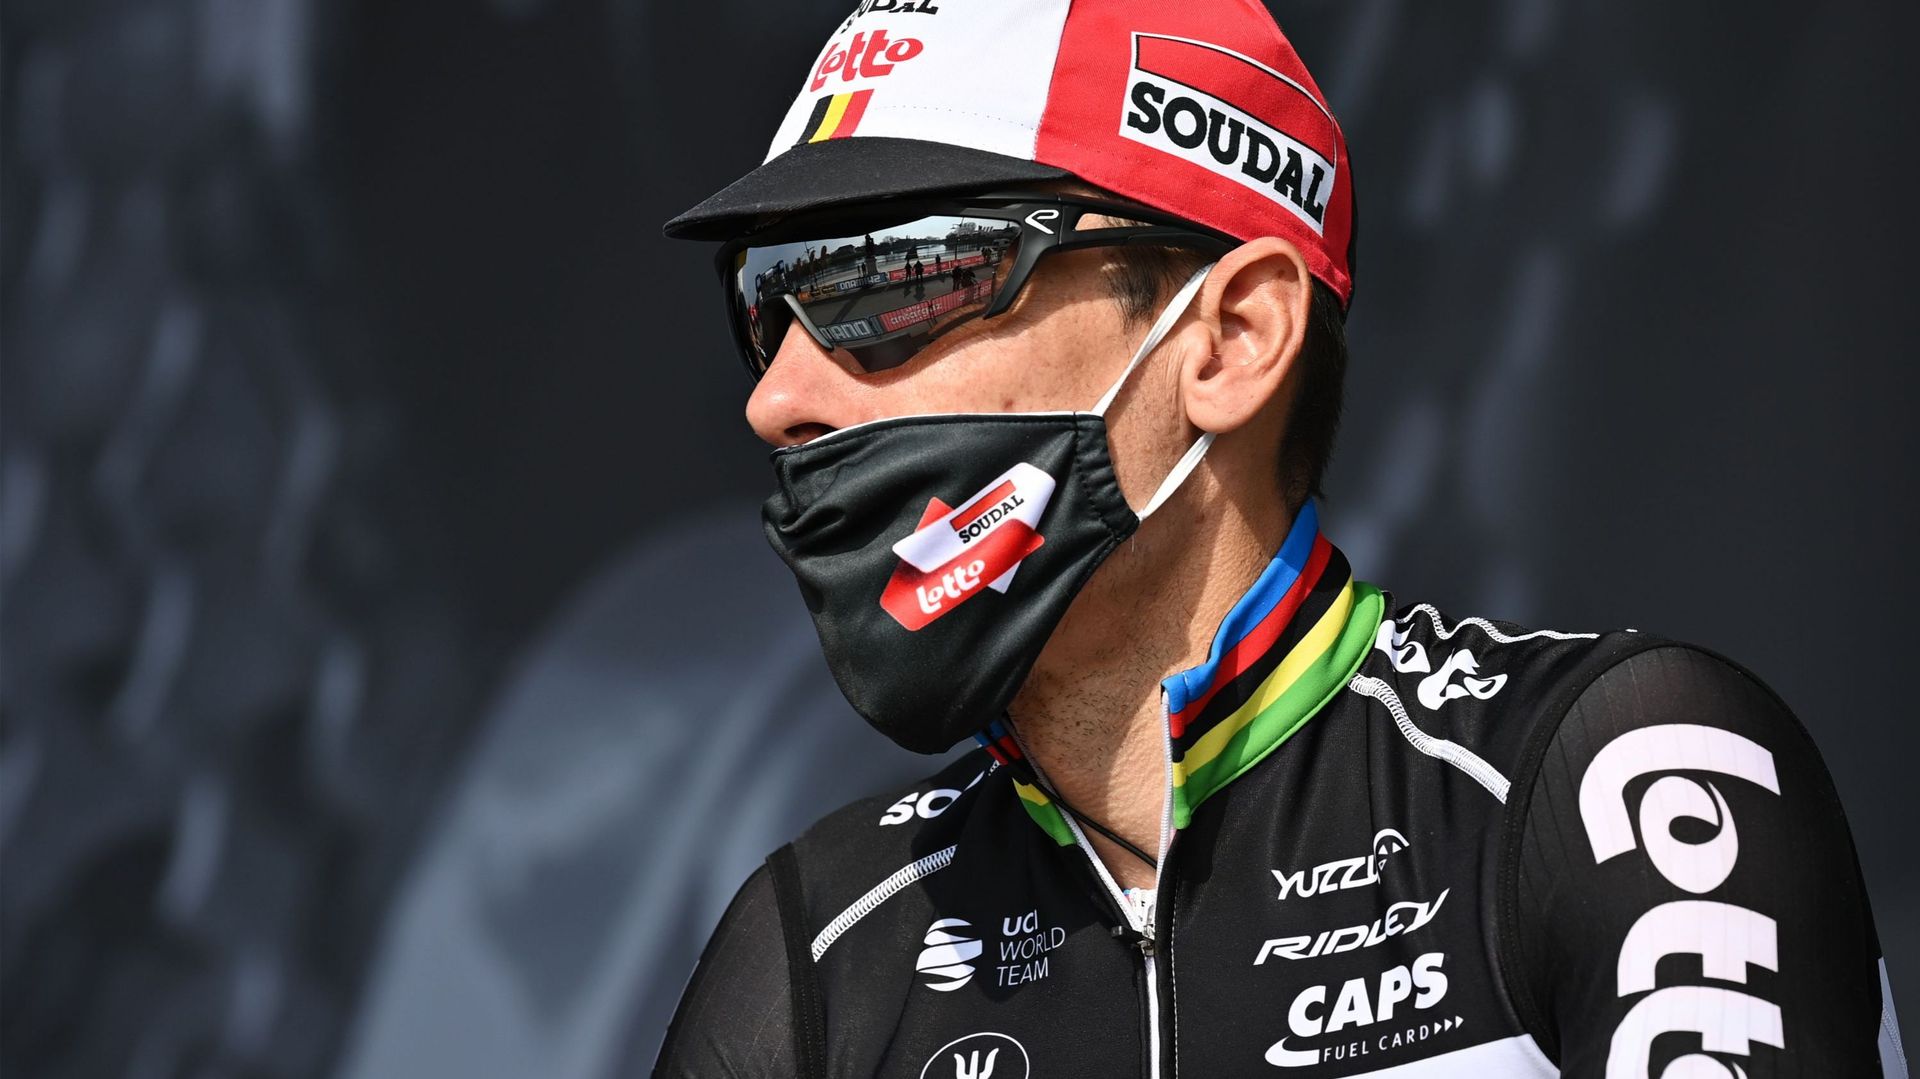 Philippe Gilbert "heureux d'être au départ" de la Flèche Wallonne après sa pause